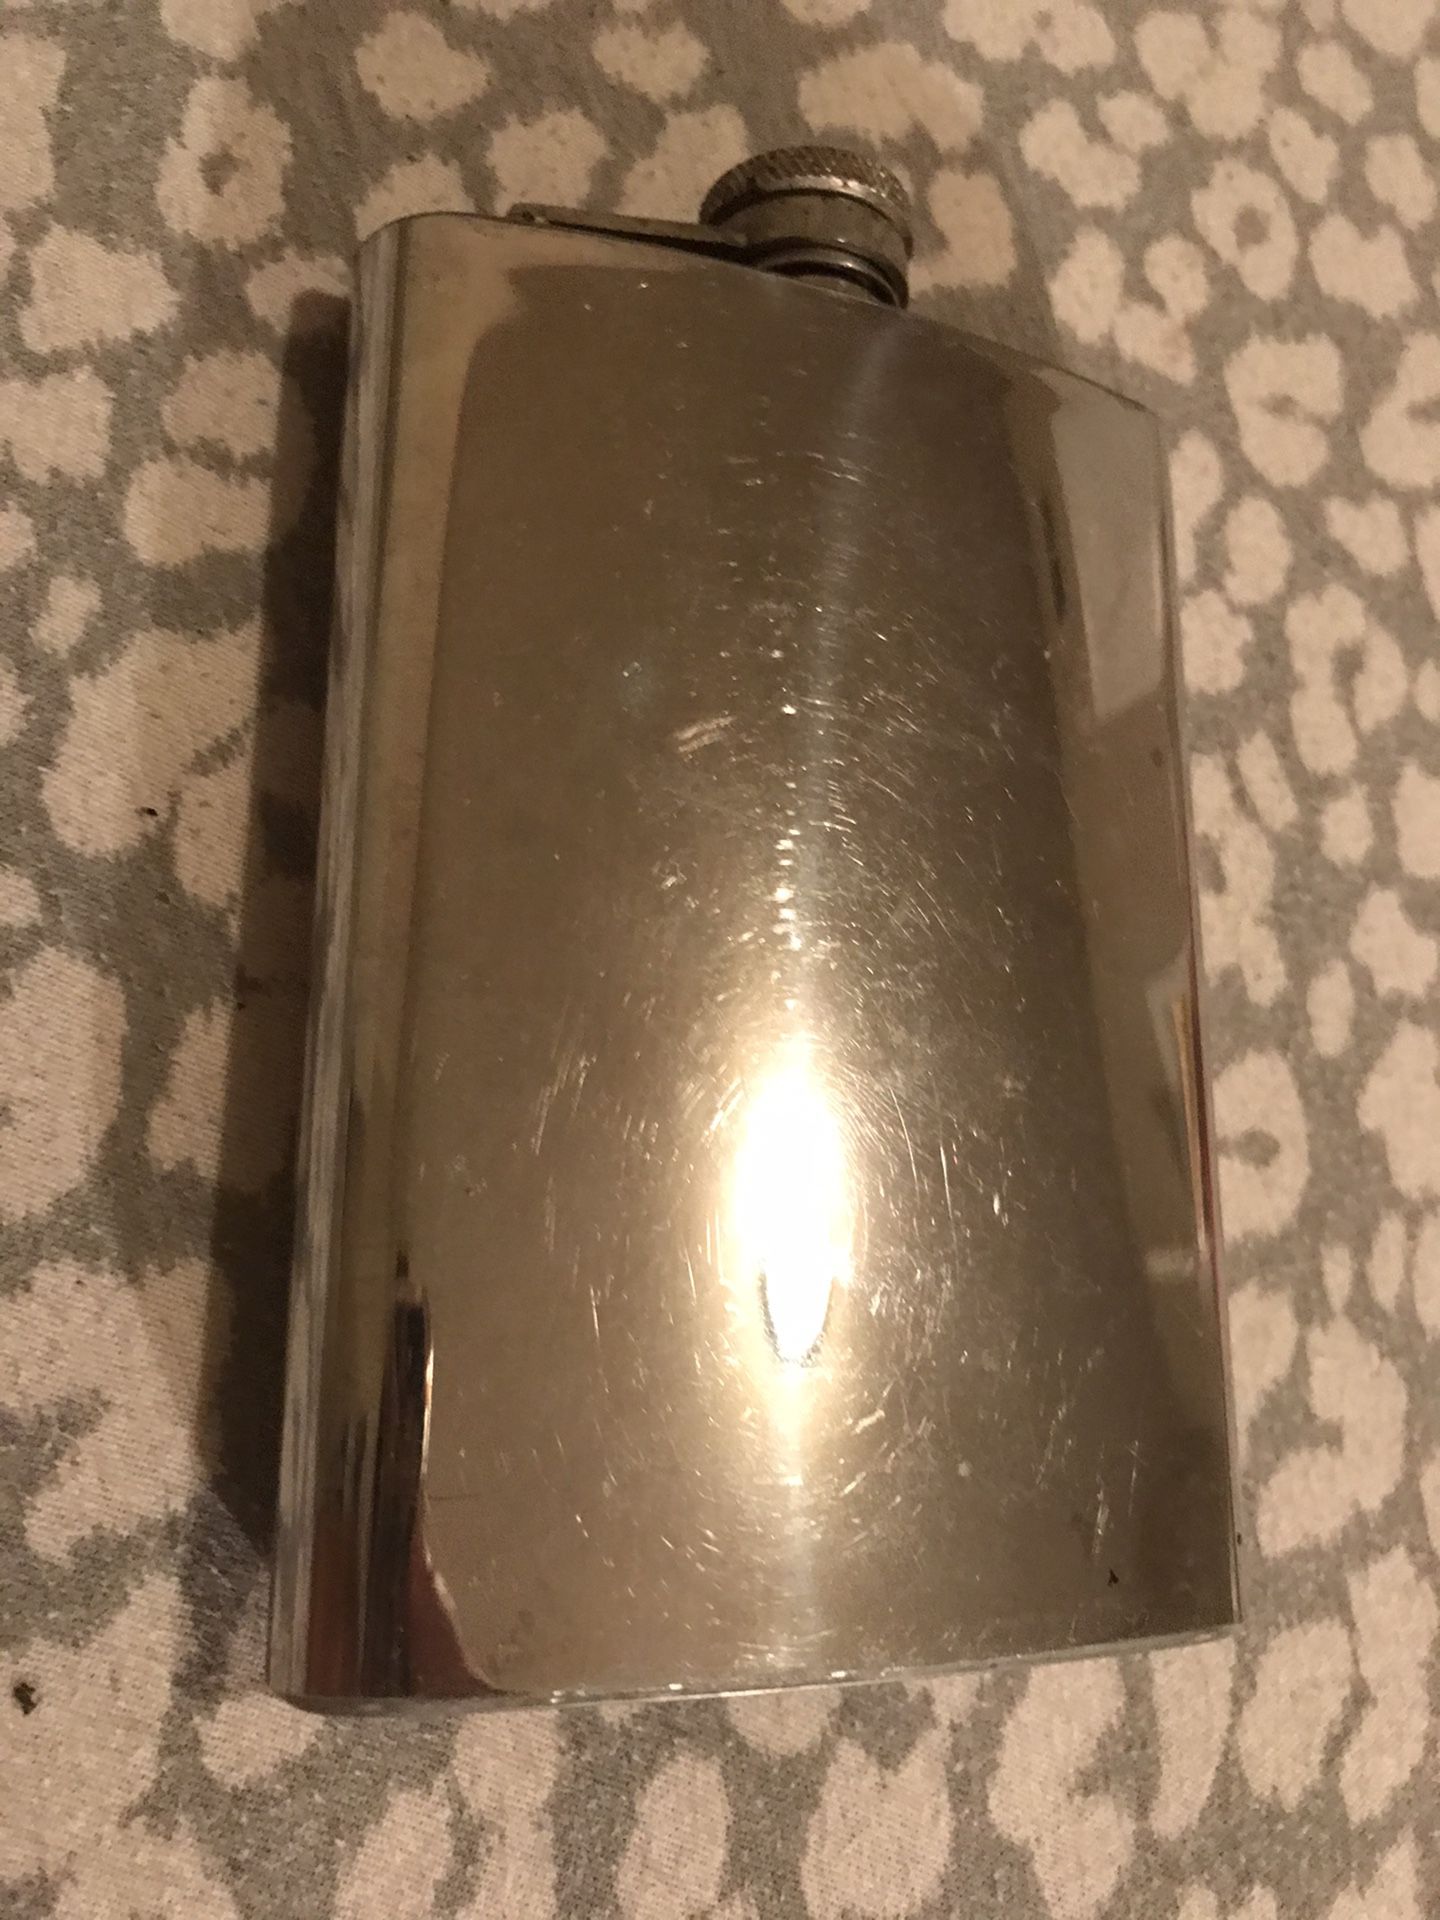 Vintage Flask